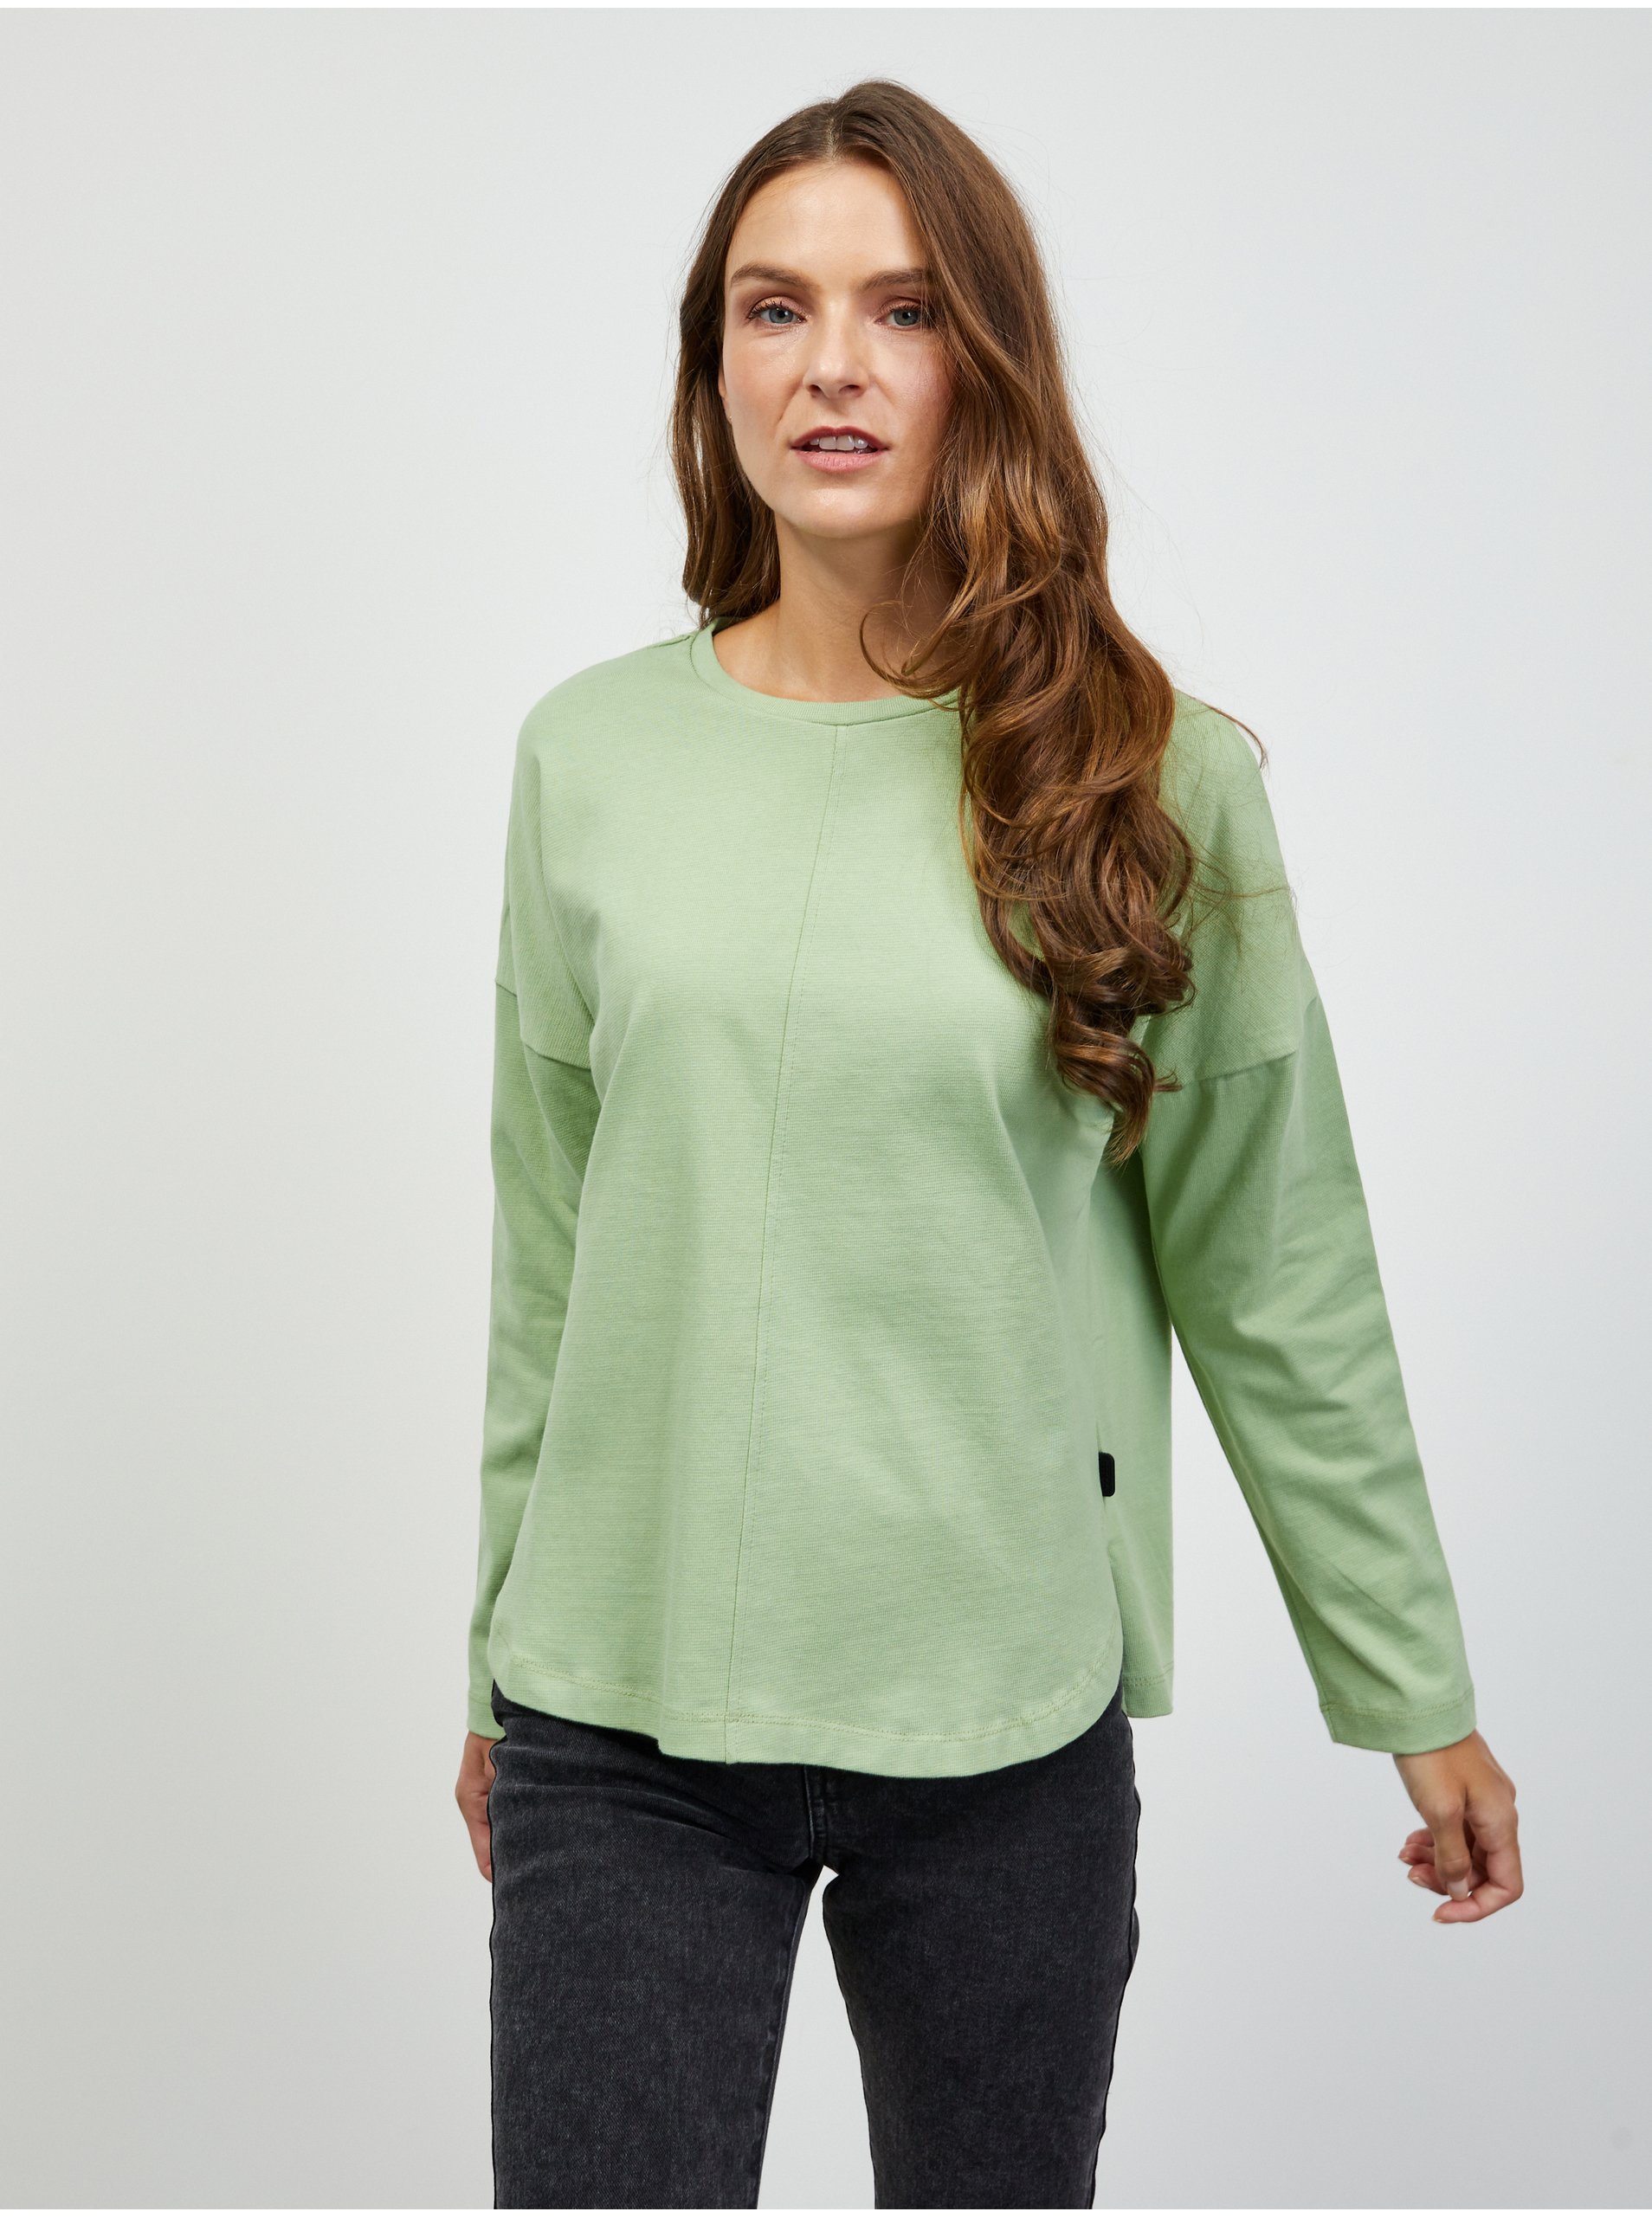 Lacno Svetlozelené dámske basic tričko s dlhým rukávom ZOOT.lab Bambie